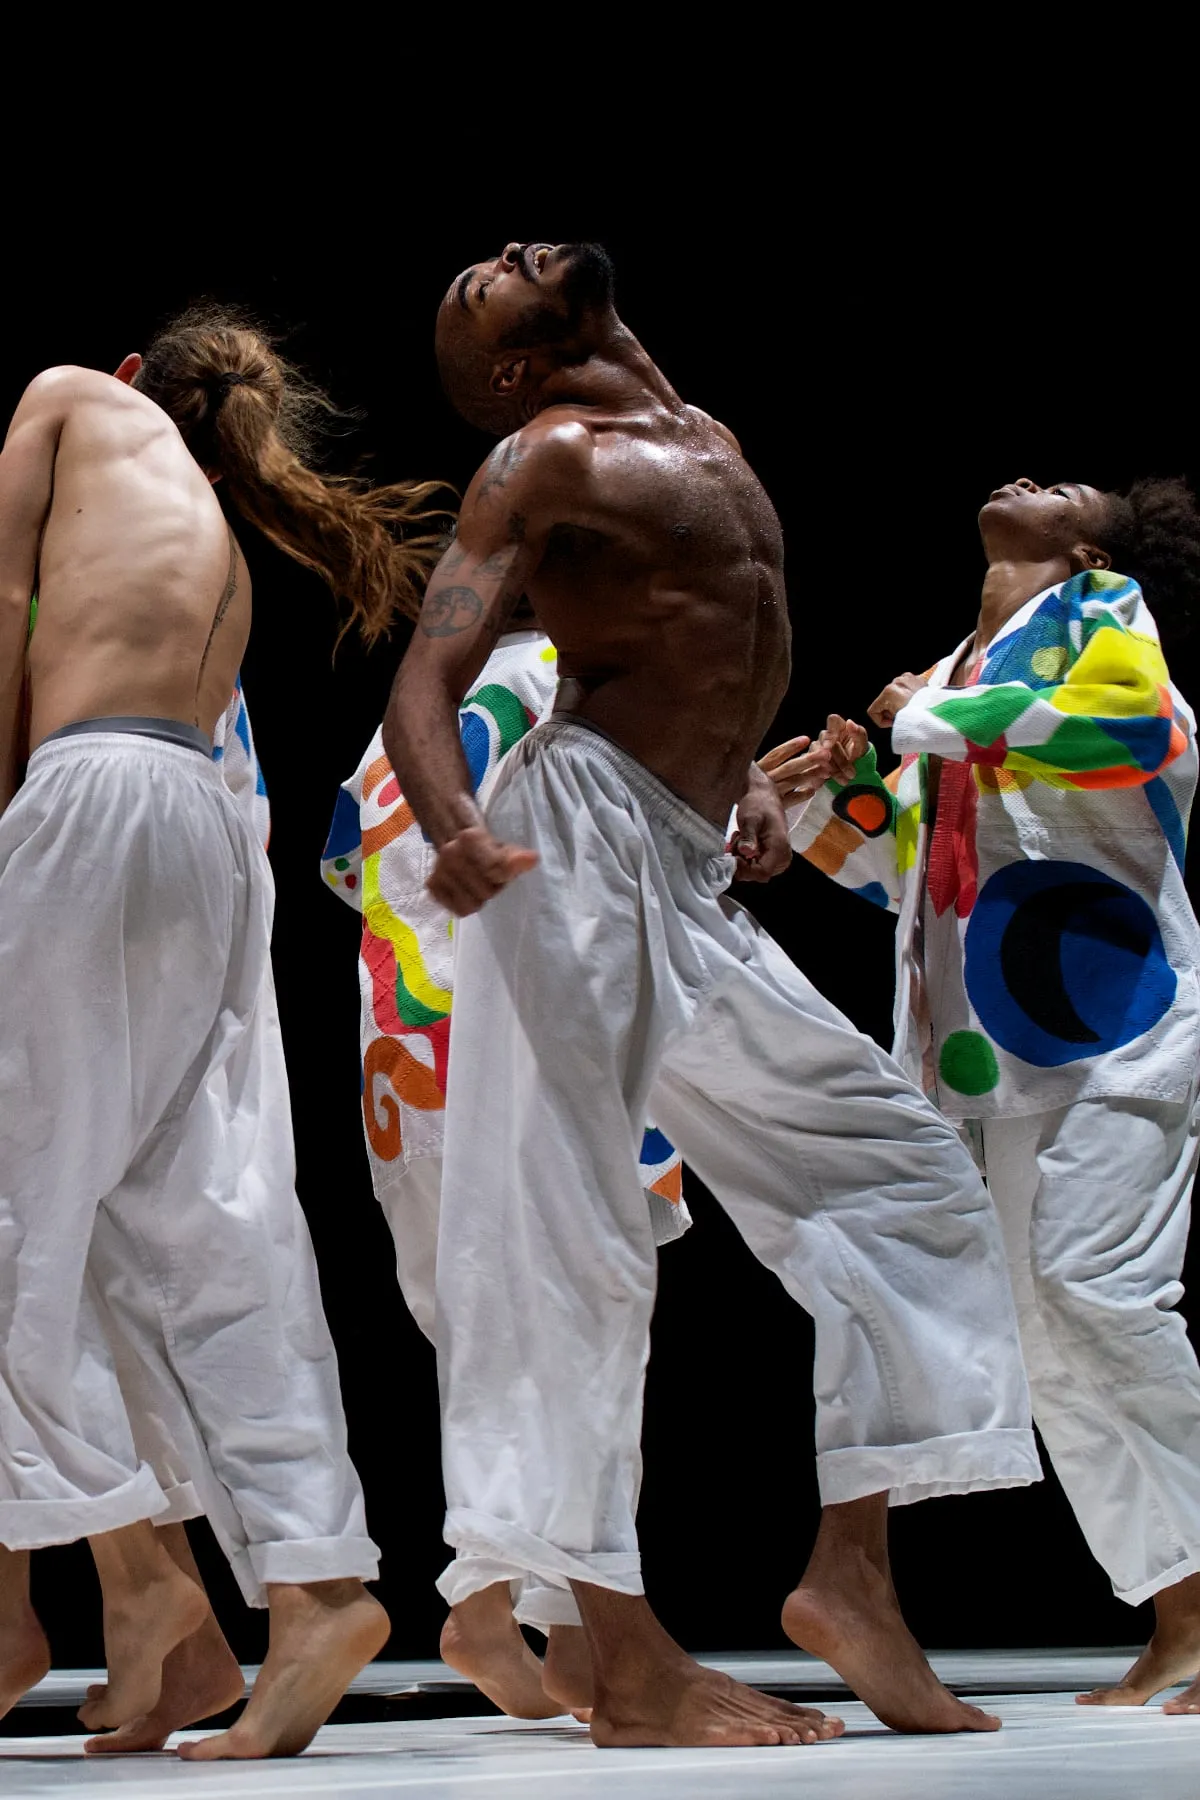 Danseurs cubains vêtus de kimonos colorés interprétant une pièce de danse contemporaine Brutal chorégraphiée par Nelson Reguera